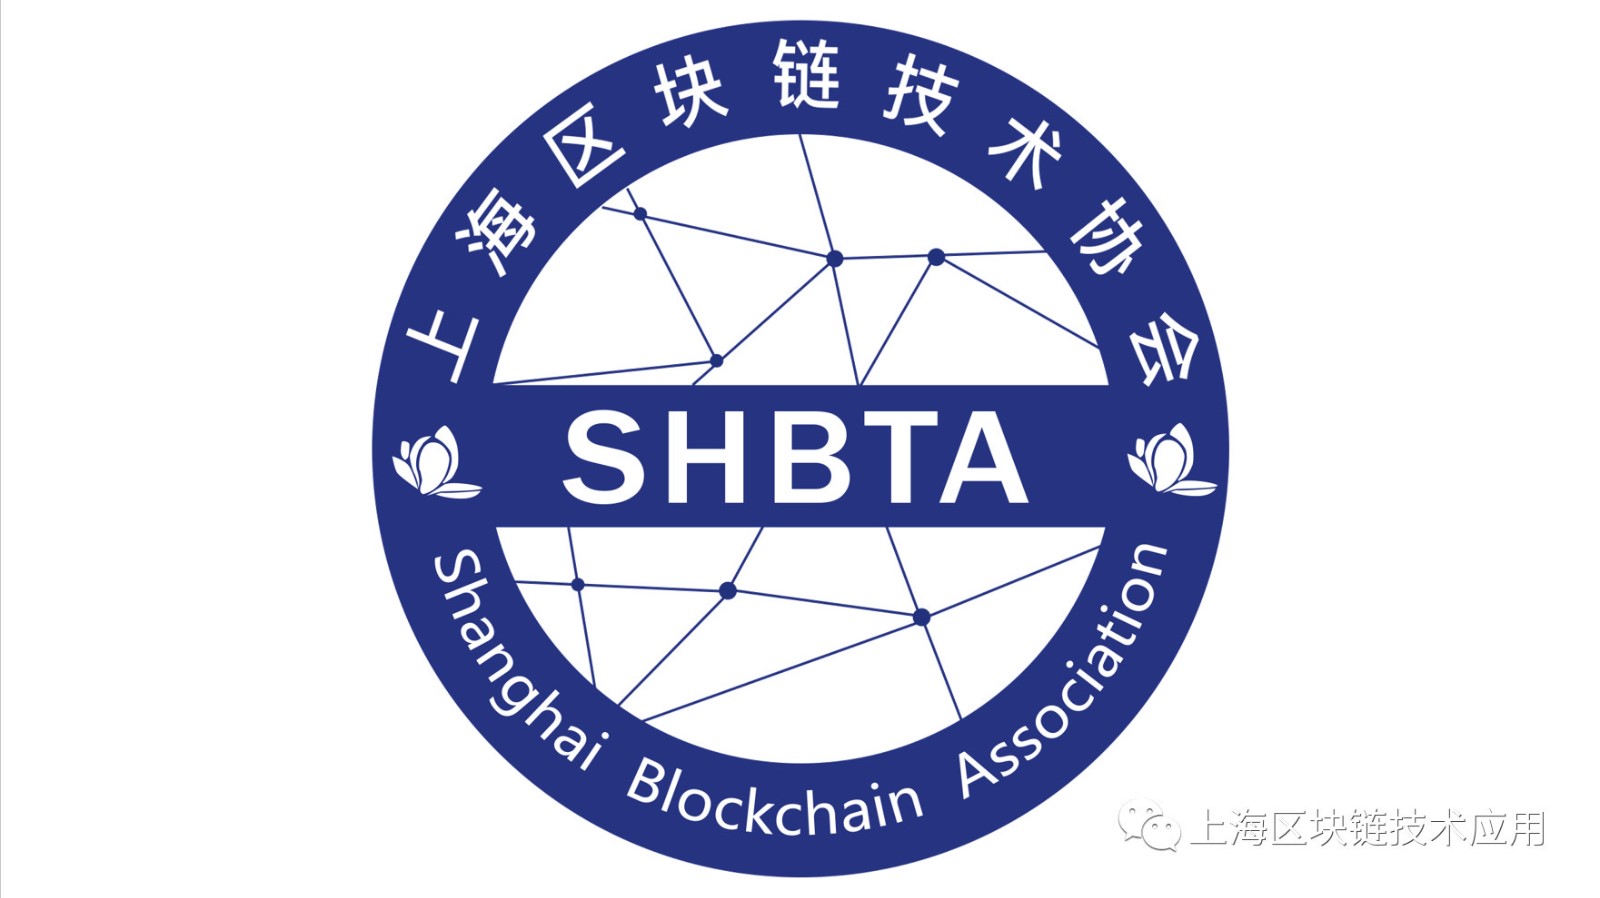 上海区块链技术协会